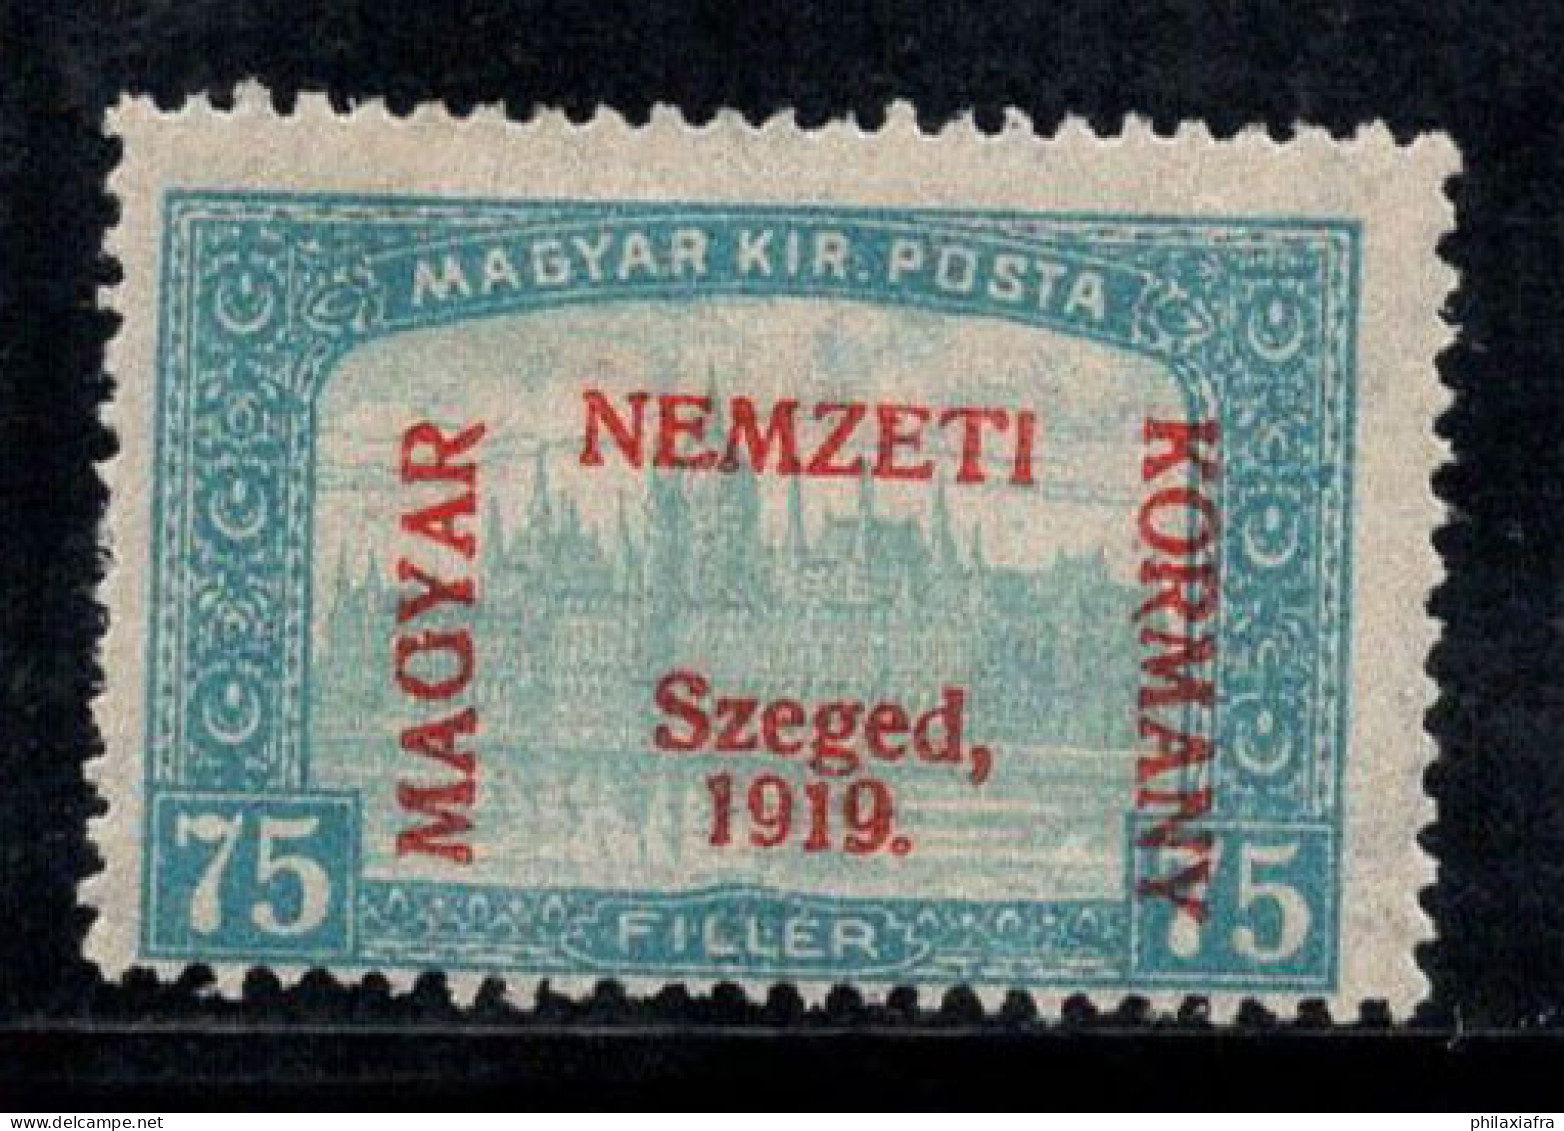 Hongrie 1919 Mi. 14 Neuf * MH 100% Signé Szeged, Nemzeti, 25 F - Szeged